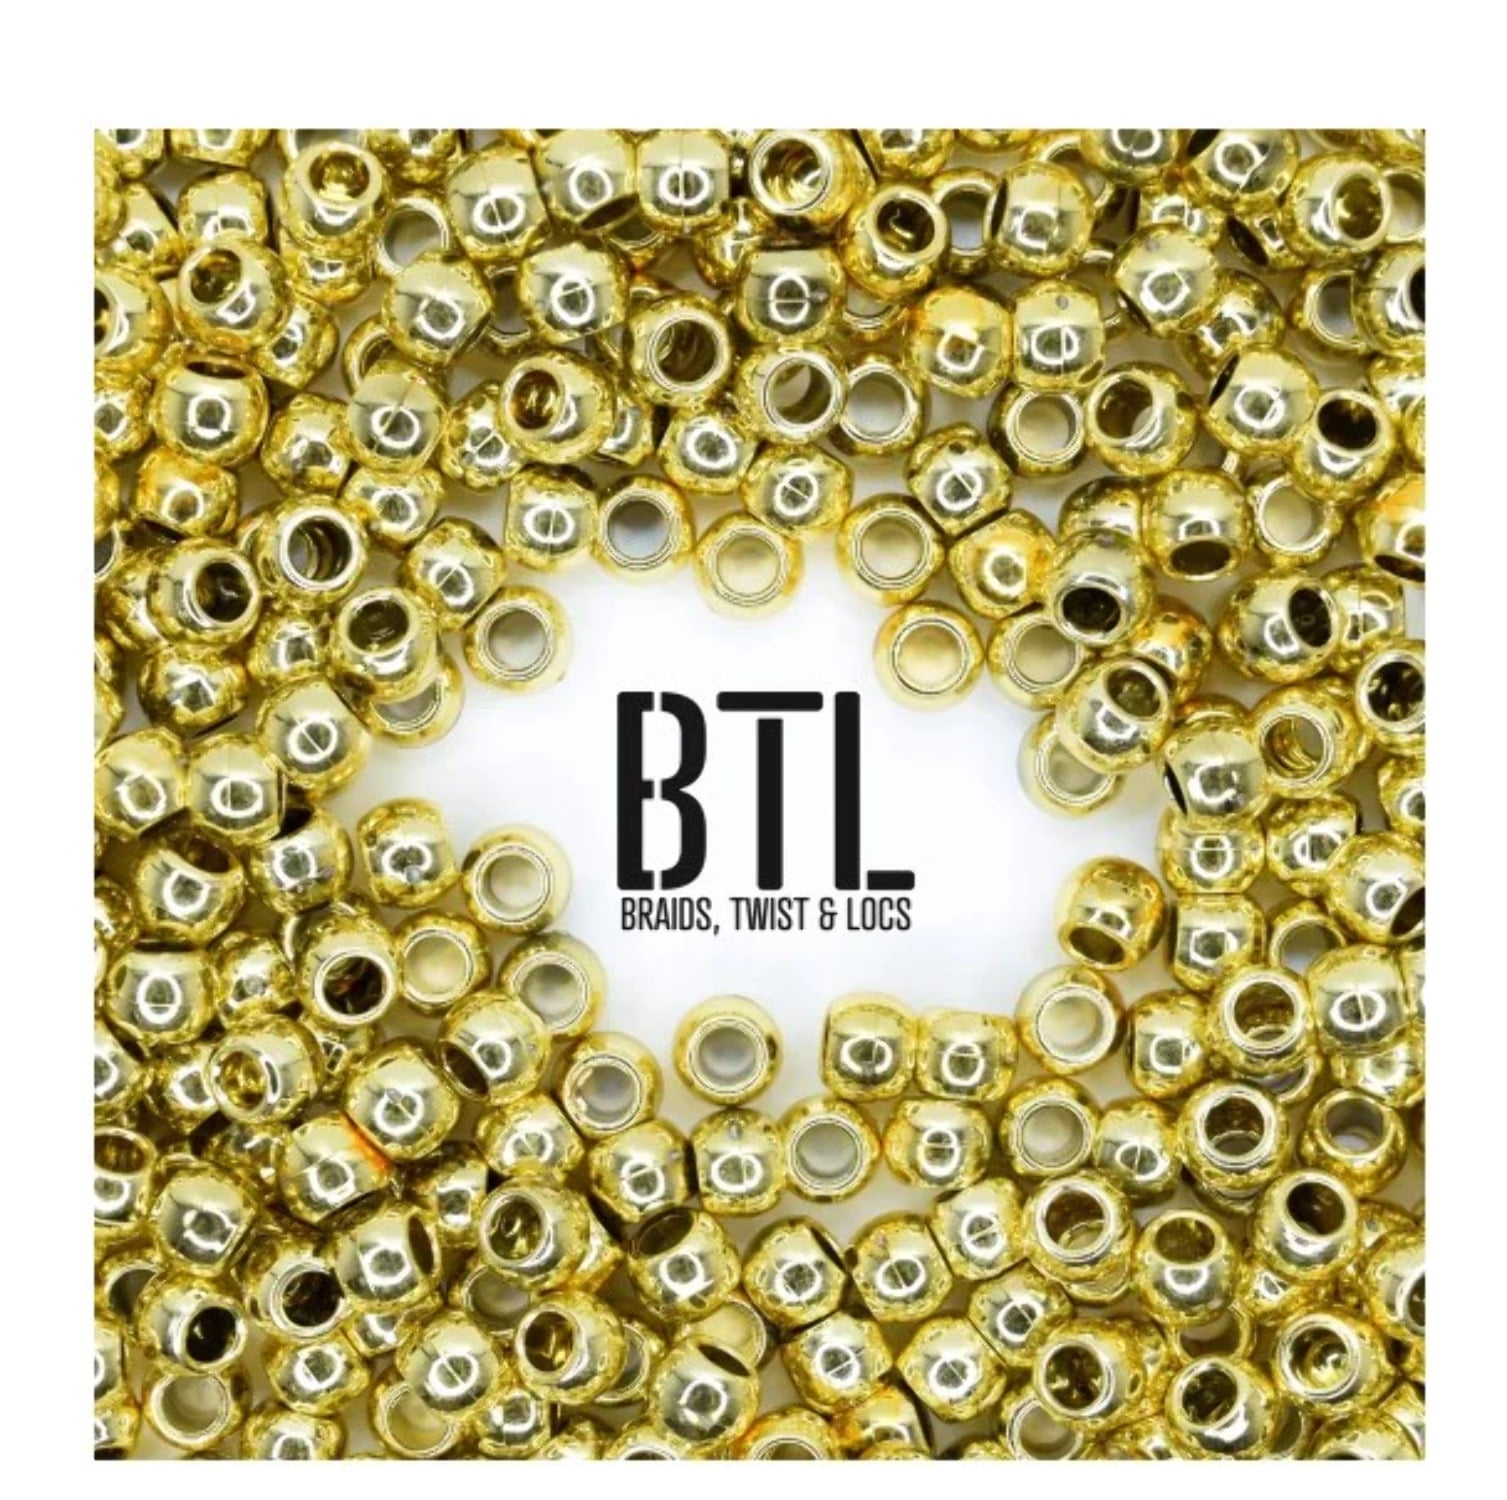 BTL braiding gel back in stock!!, By Image too